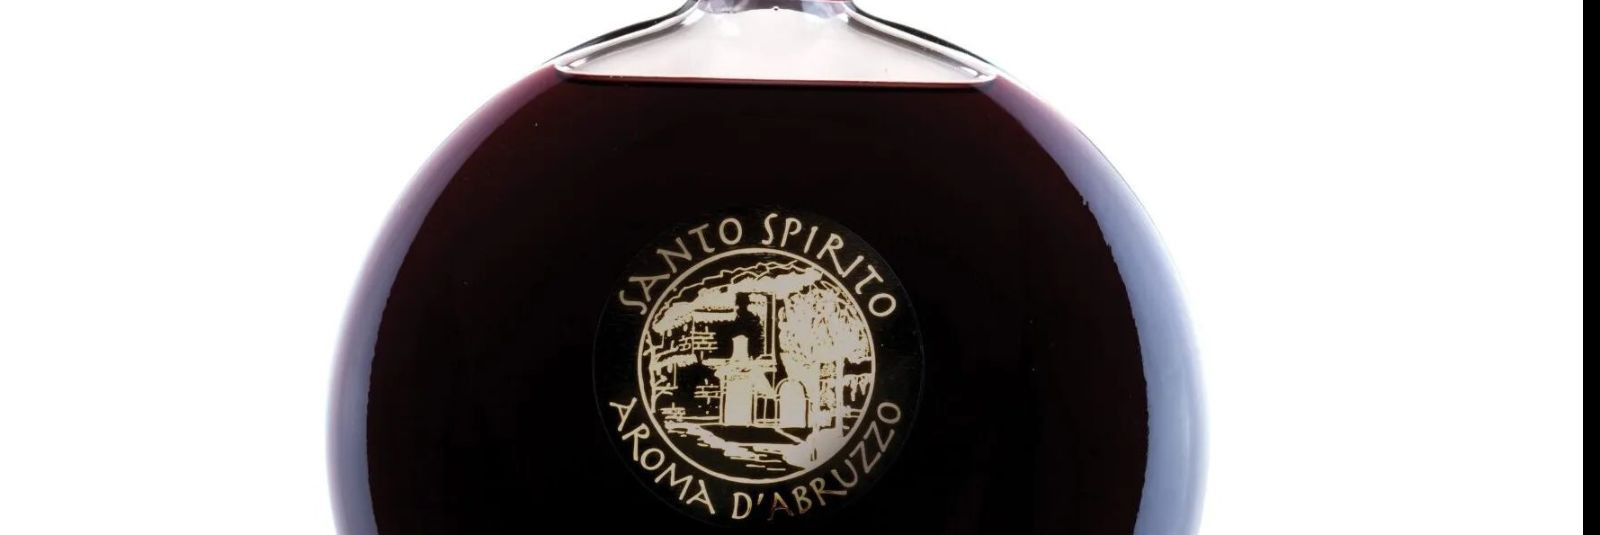 Ratafia on klassikaline Itaalia liköör, mis on valmistatud punasest veinist ja hapukirssidest. See jook on tuntud kogu Itaalias ja eriti Abruzzo piirkonnas, kus